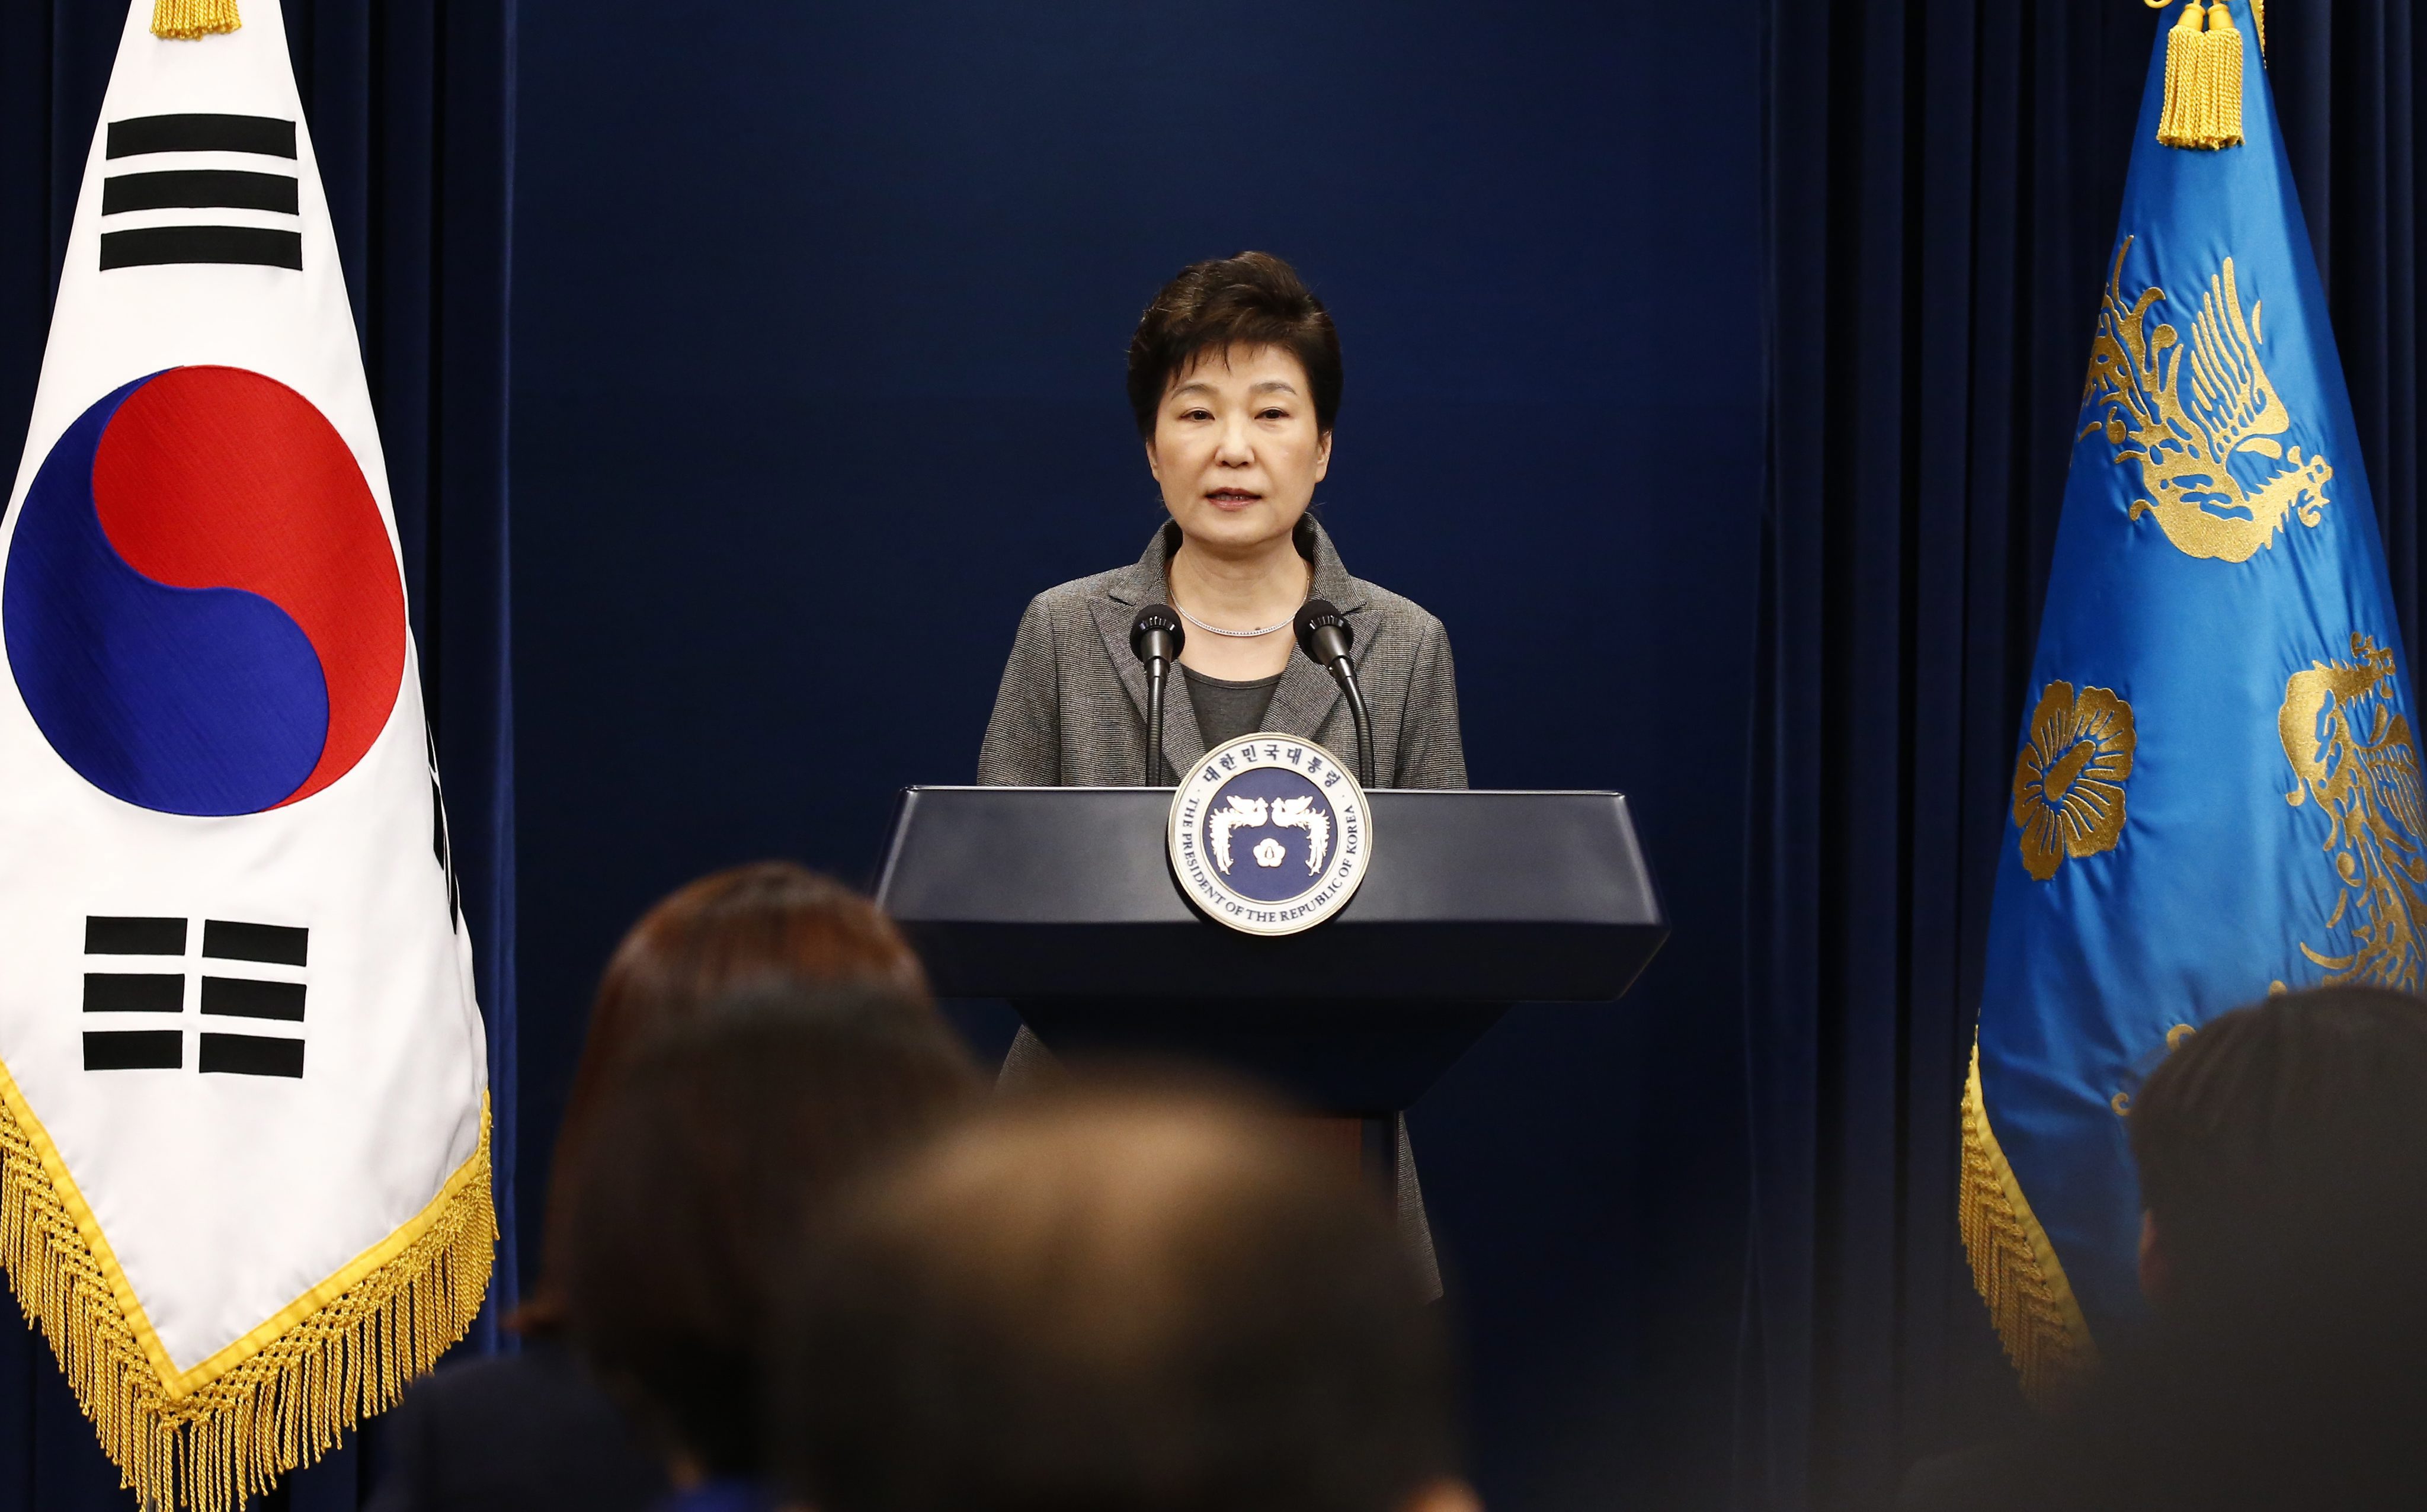 Στη Βουλή η απόφαση για το μέλλον της Προέδρου της Ν. Κορέας